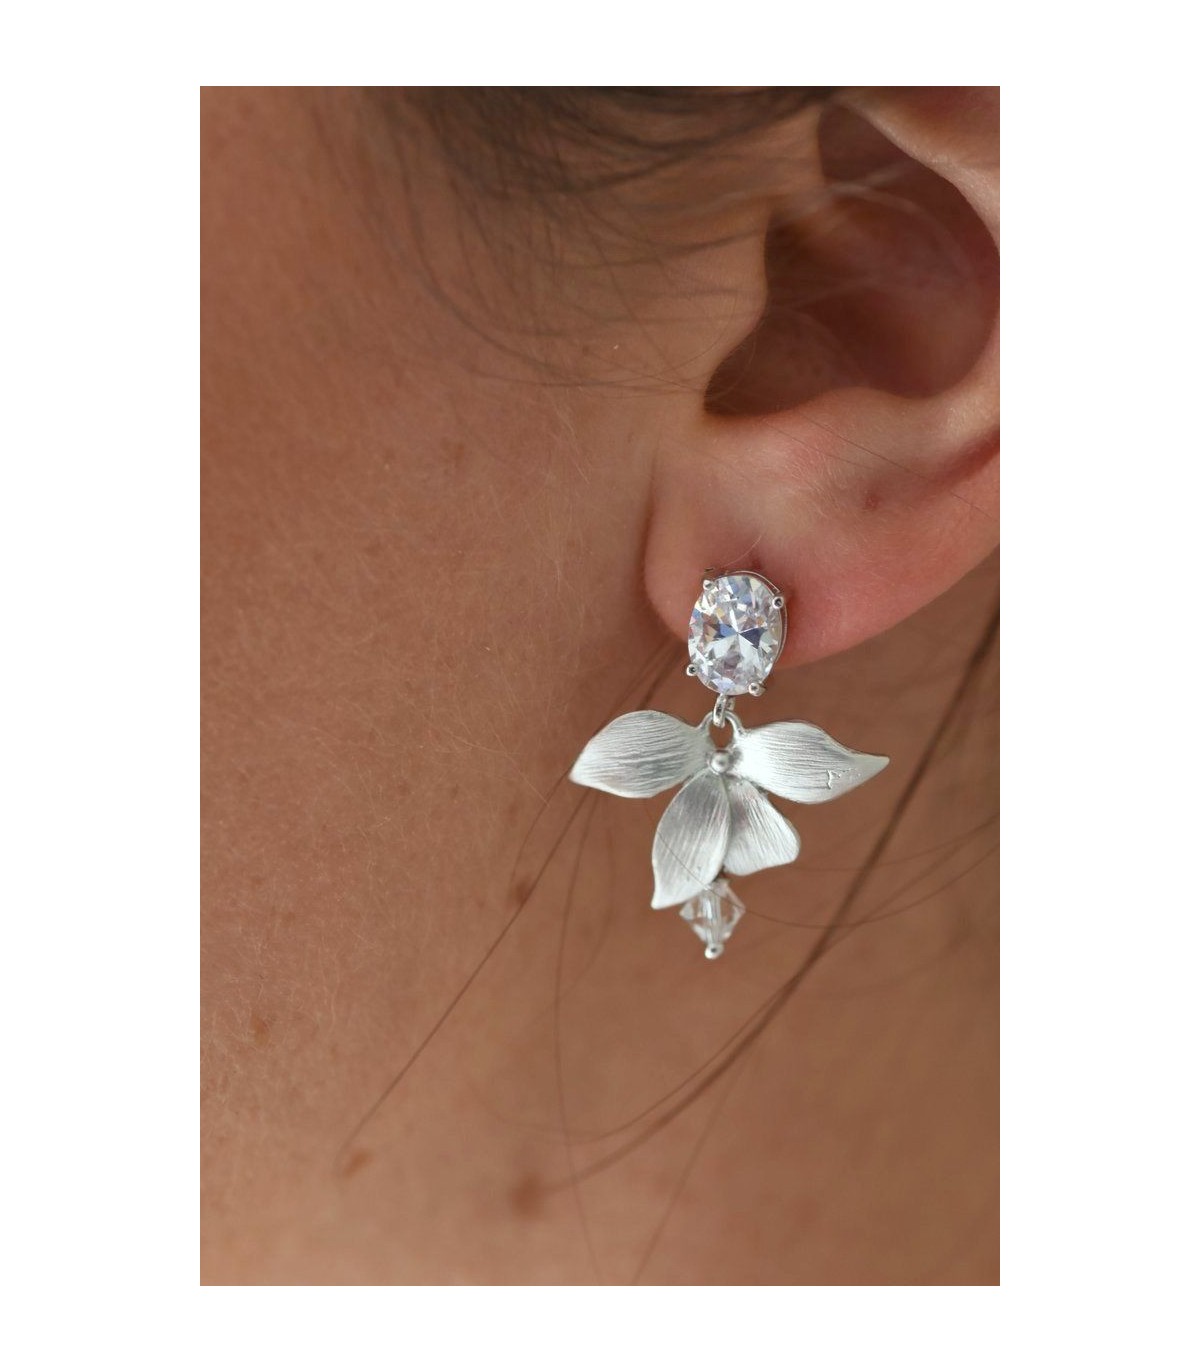 Boucles d'oreilles Alice pour la mariée avec fleur d'orchidée argentée et strass